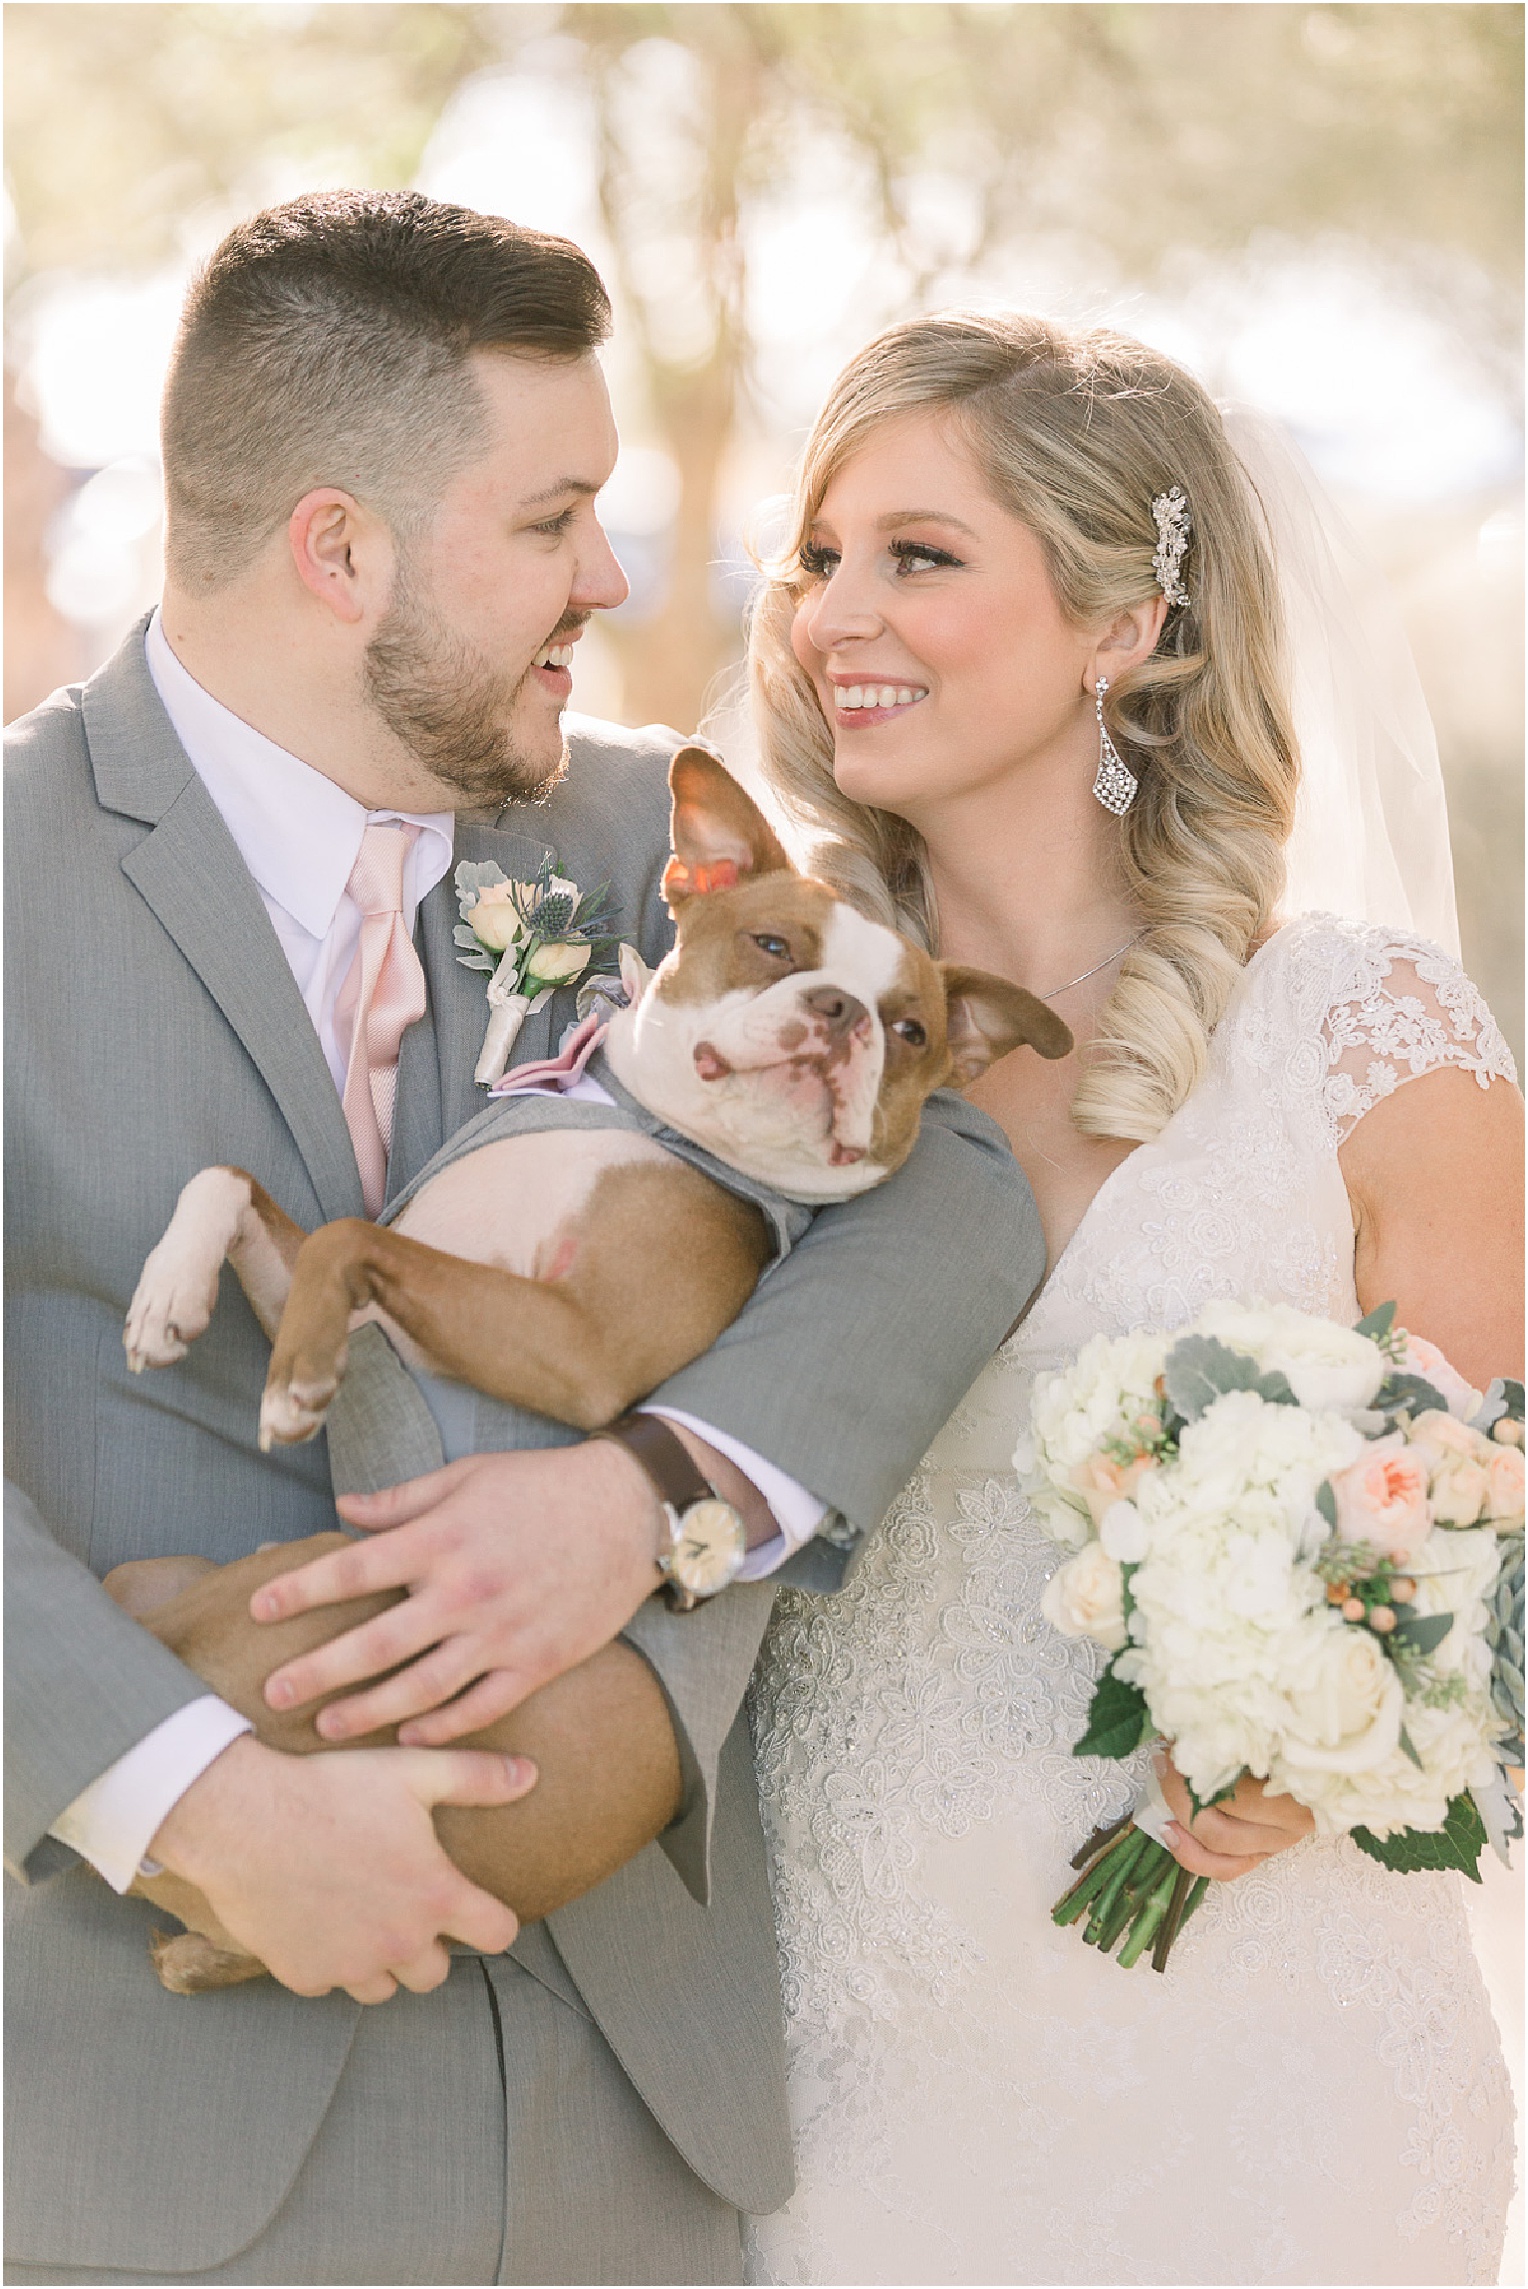 Annabelle + James Hilton El Conquistador Wedding outdoor bride and groom portraits with puppy